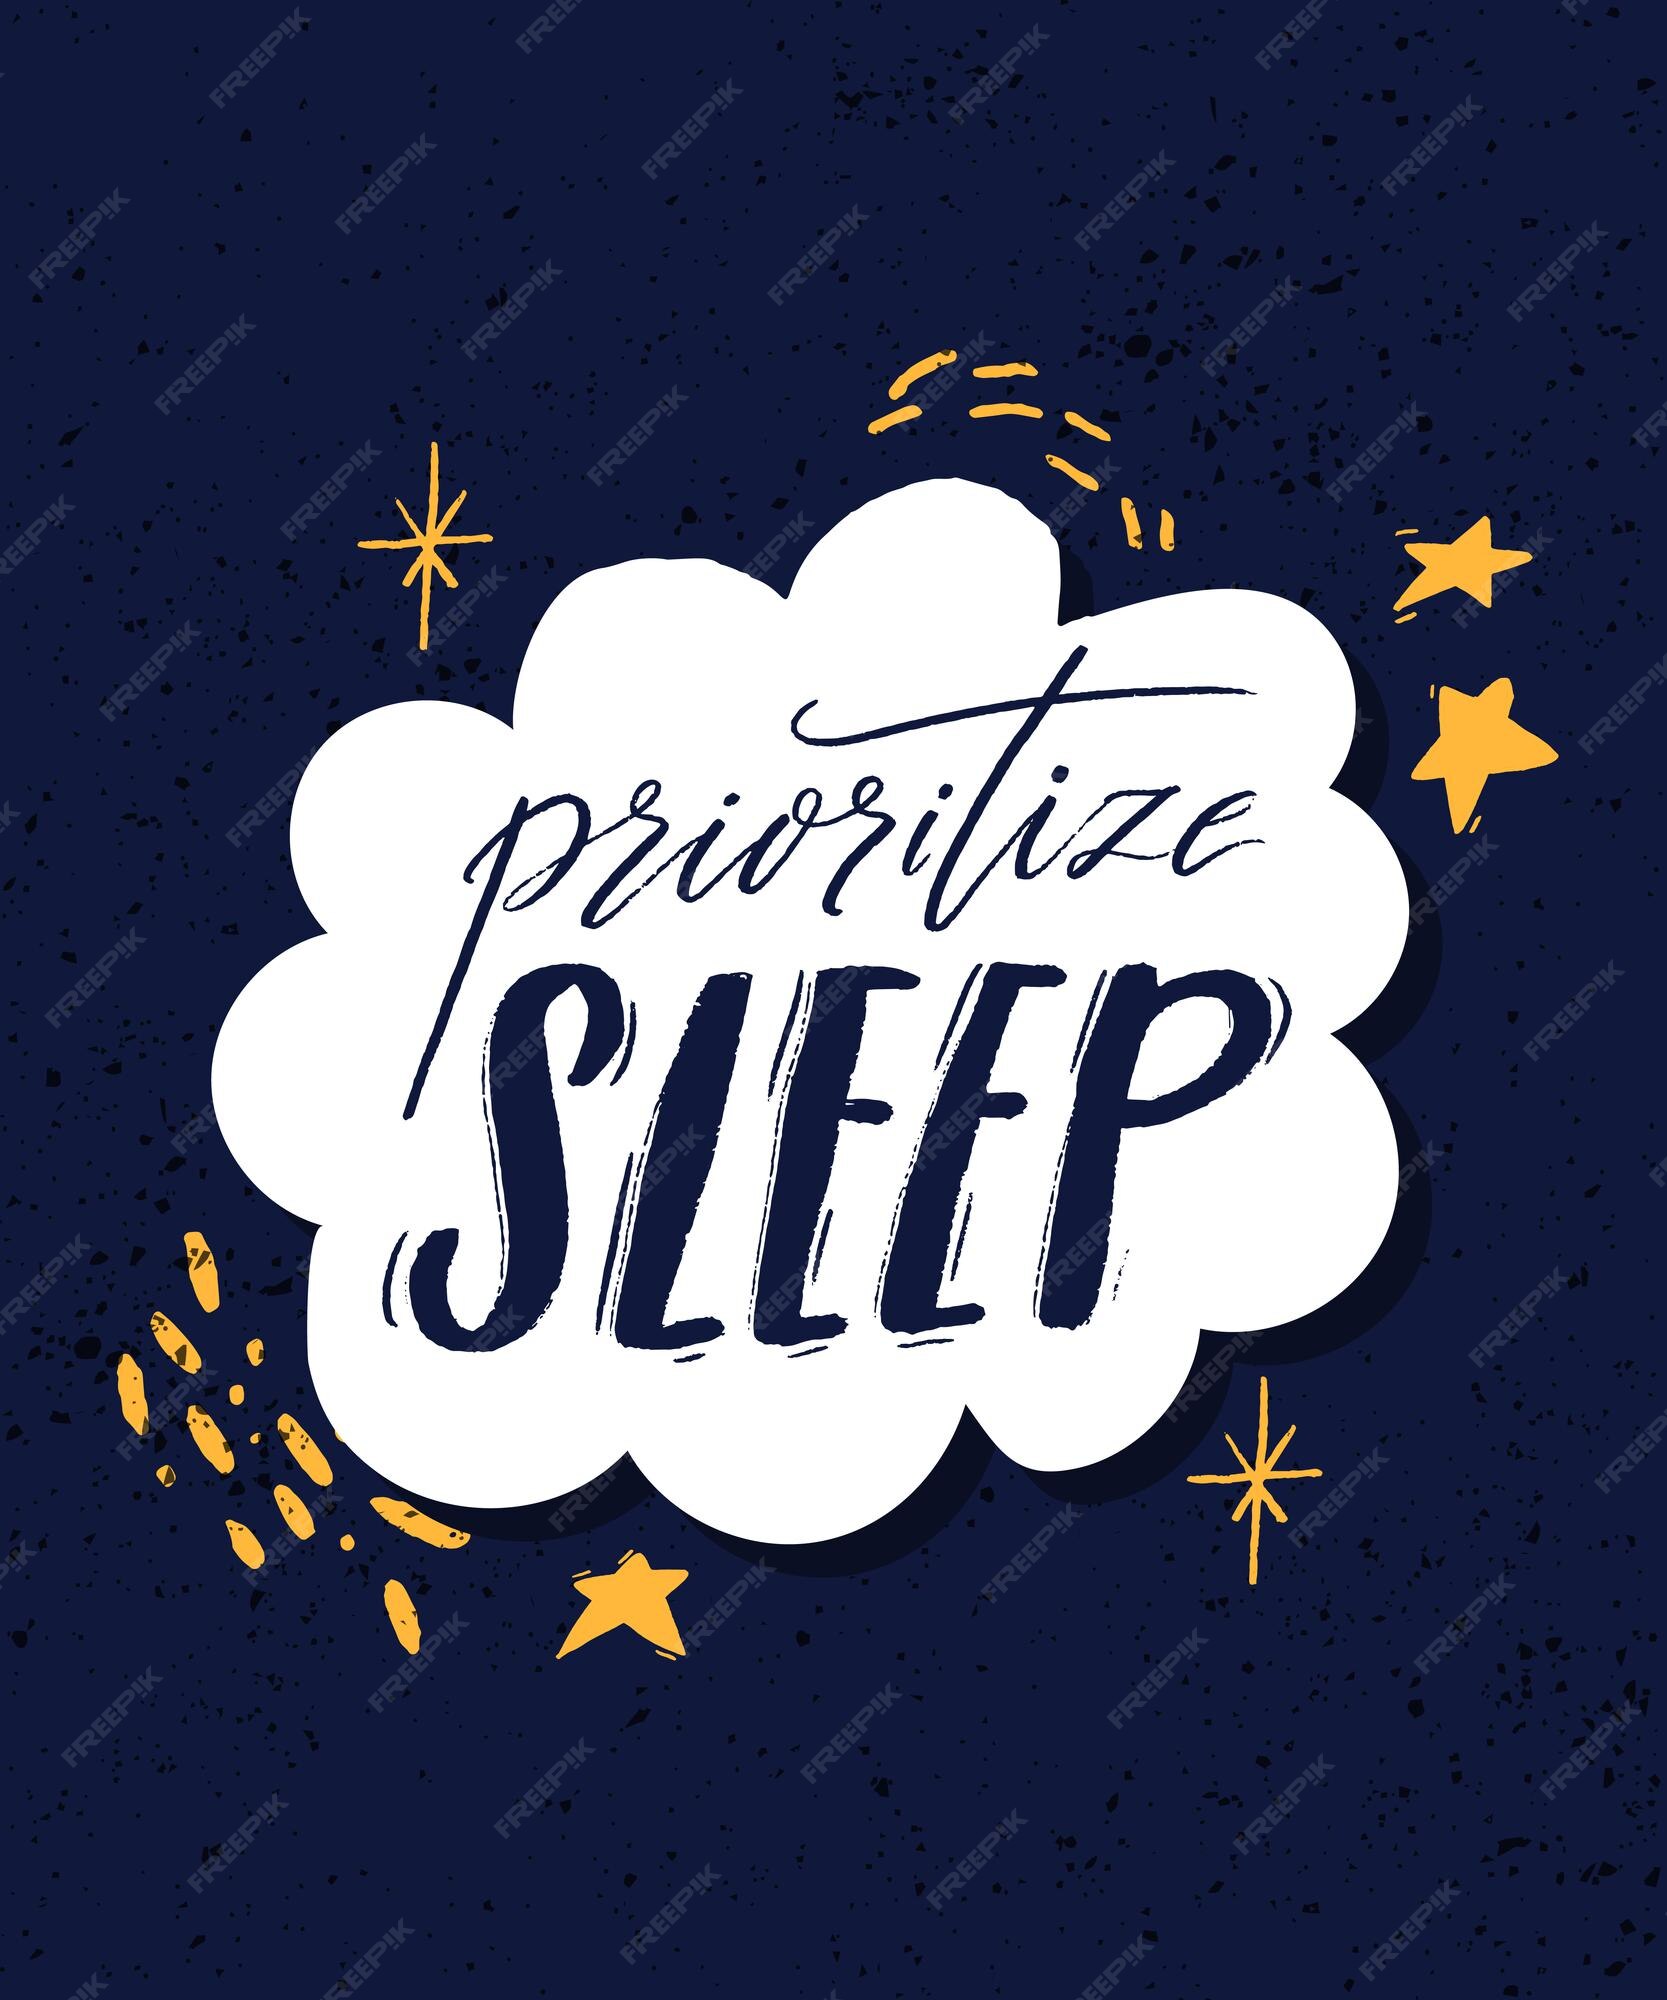 Giấc ngủ là yếu tố quan trọng để duy trì sức khỏe và tinh thần, vì vậy nó được đặt lên hàng đầu ưu tiên của chúng tôi. Hình ảnh liên quan sẽ giúp bạn hiểu rõ hơn về tầm quan trọng của giấc ngủ và bắt đầu chăm sóc sức khỏe của mình một cách tỉ mỉ hơn.